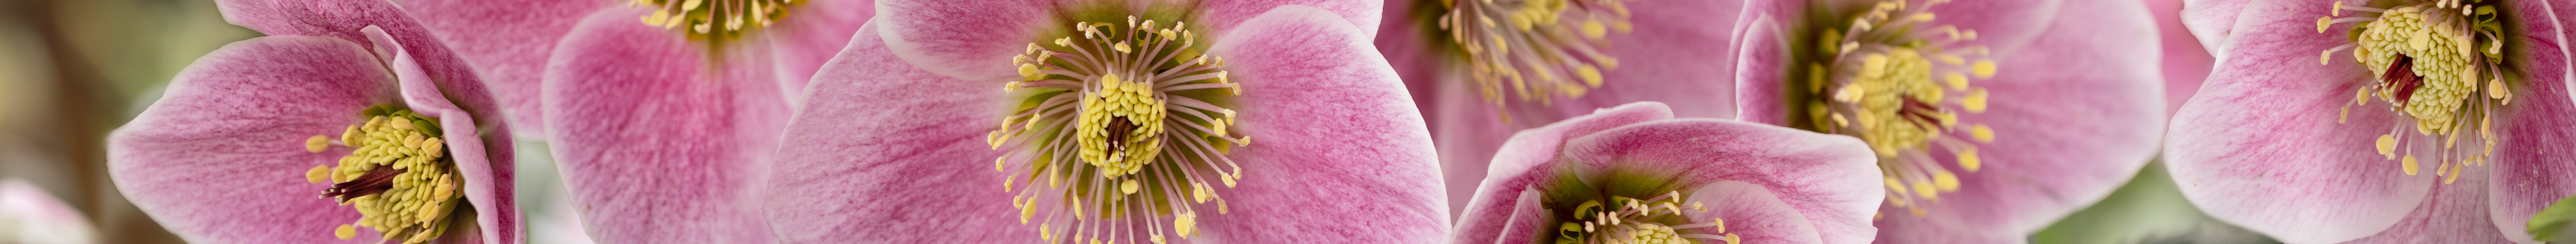 Helleborus x lemperii Blüten